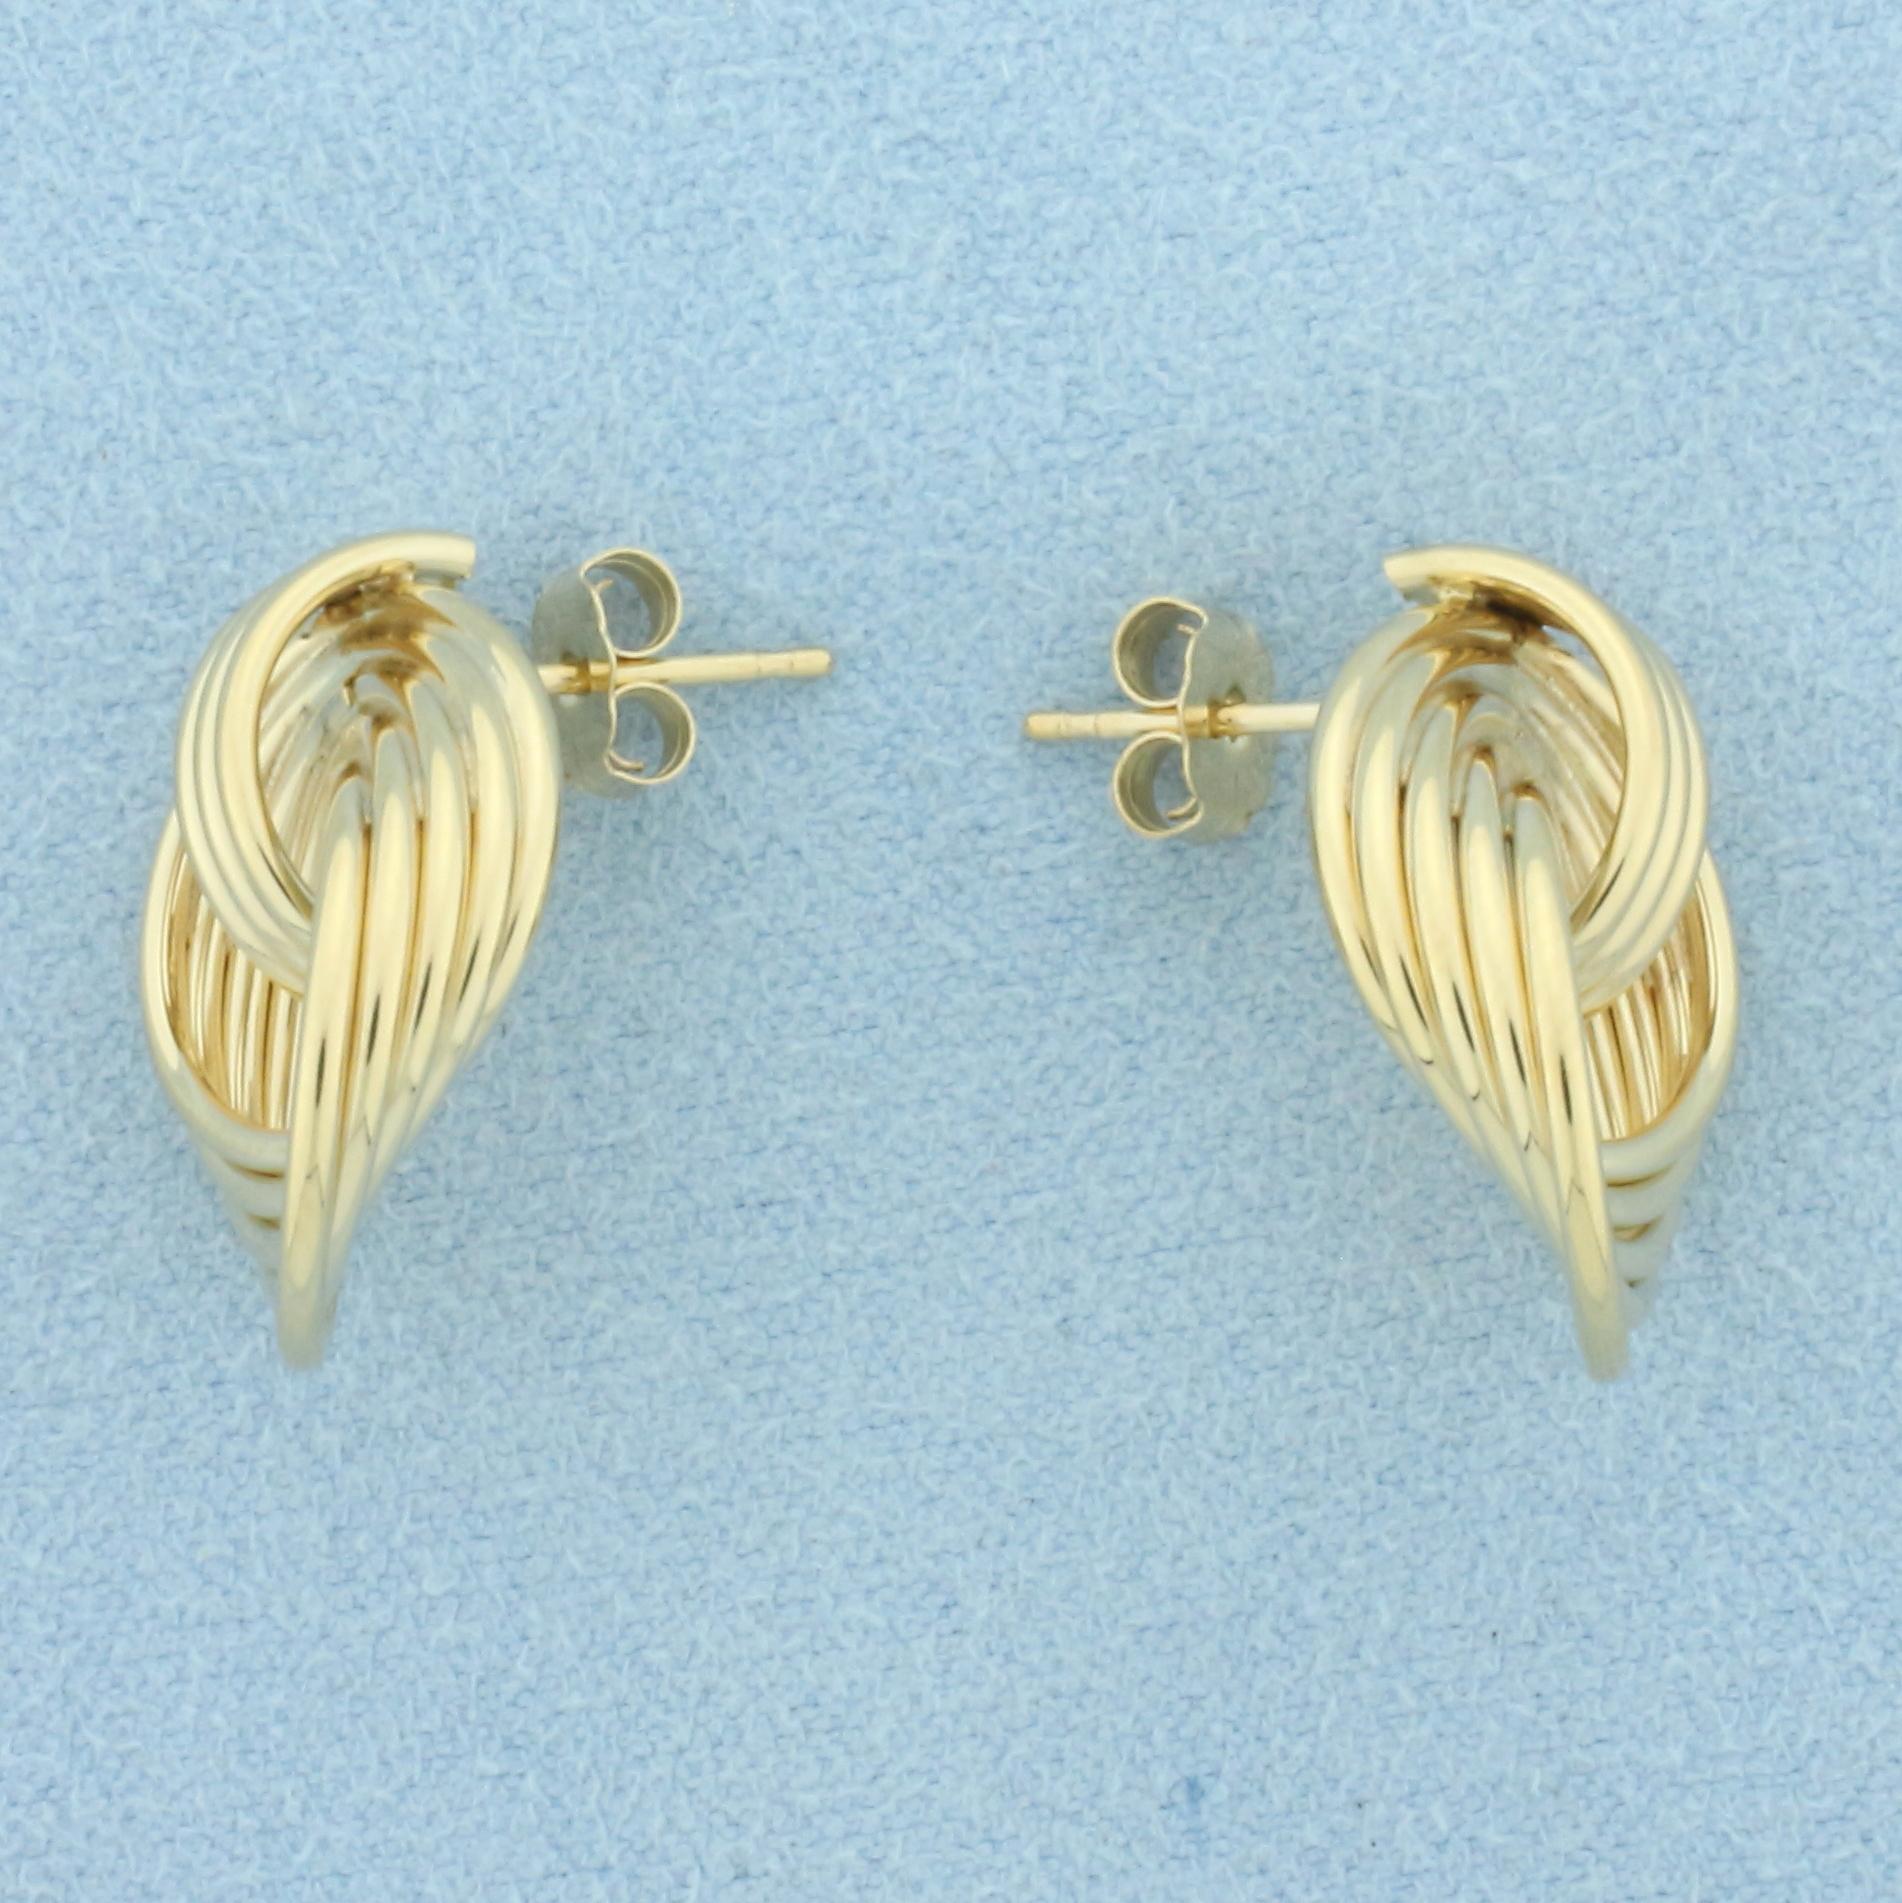 Doorknocker Knot Design Earrings In 14k Yellow Gold